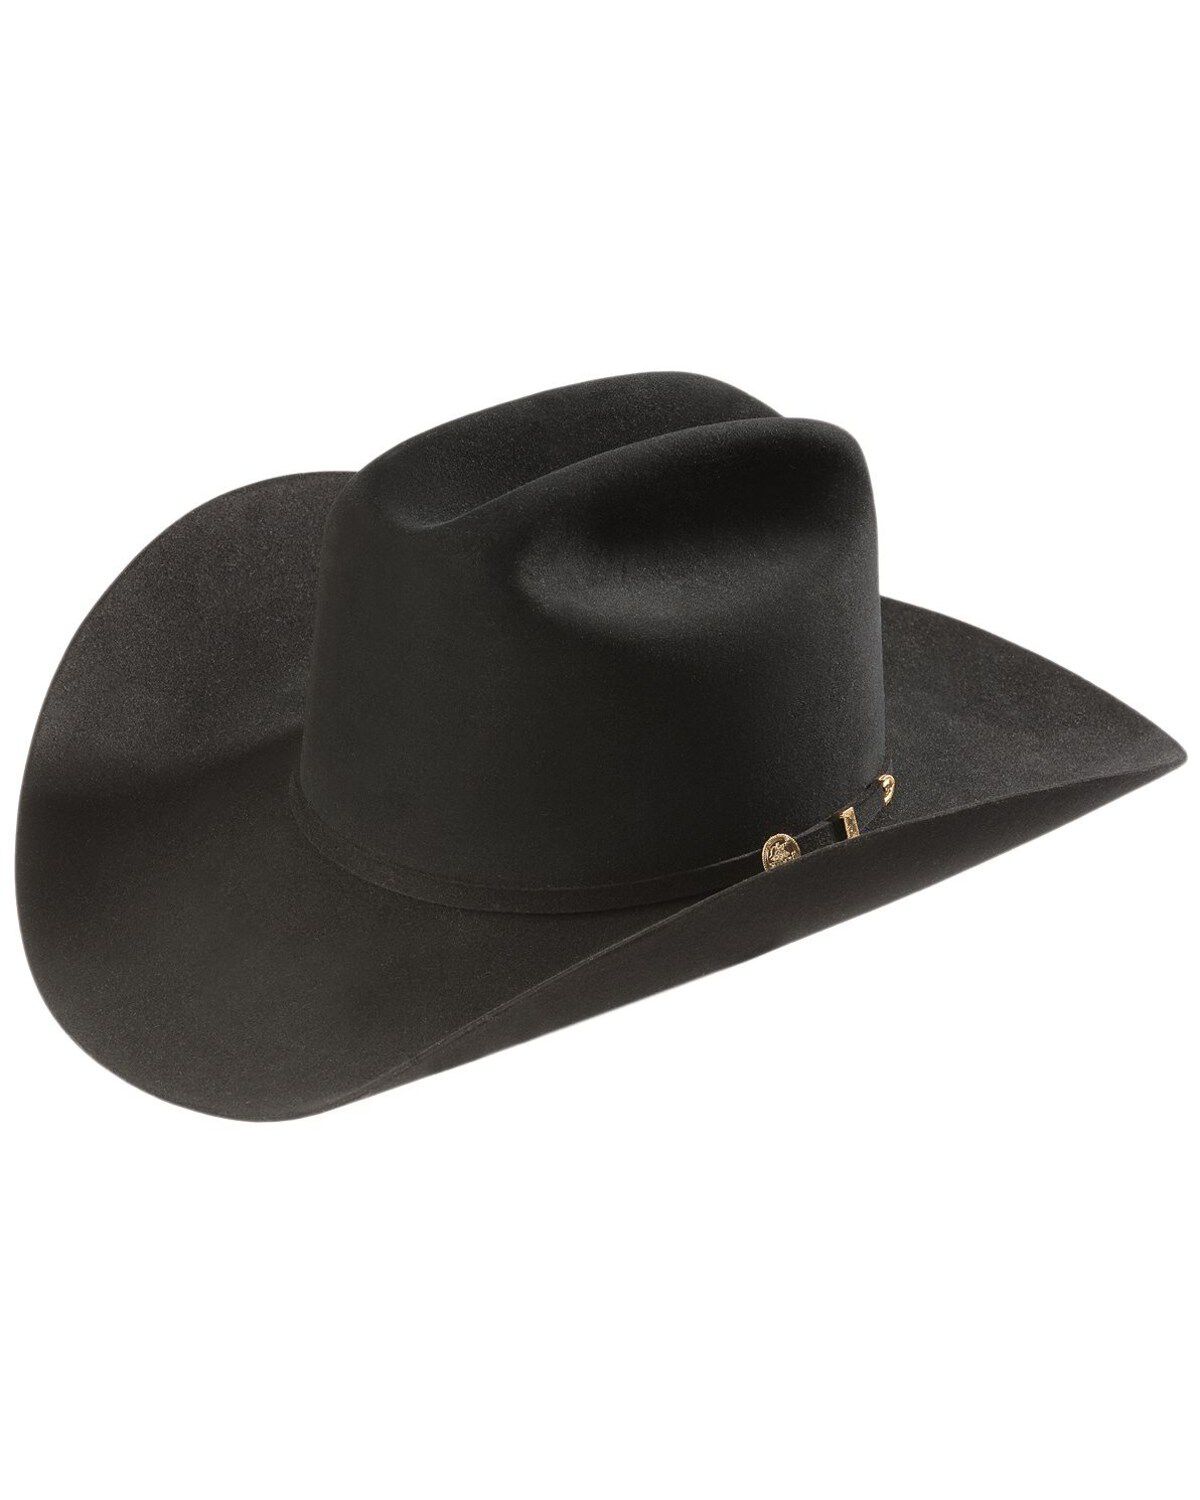 10X Bullhide Black Gold Straw Cowboy Hat